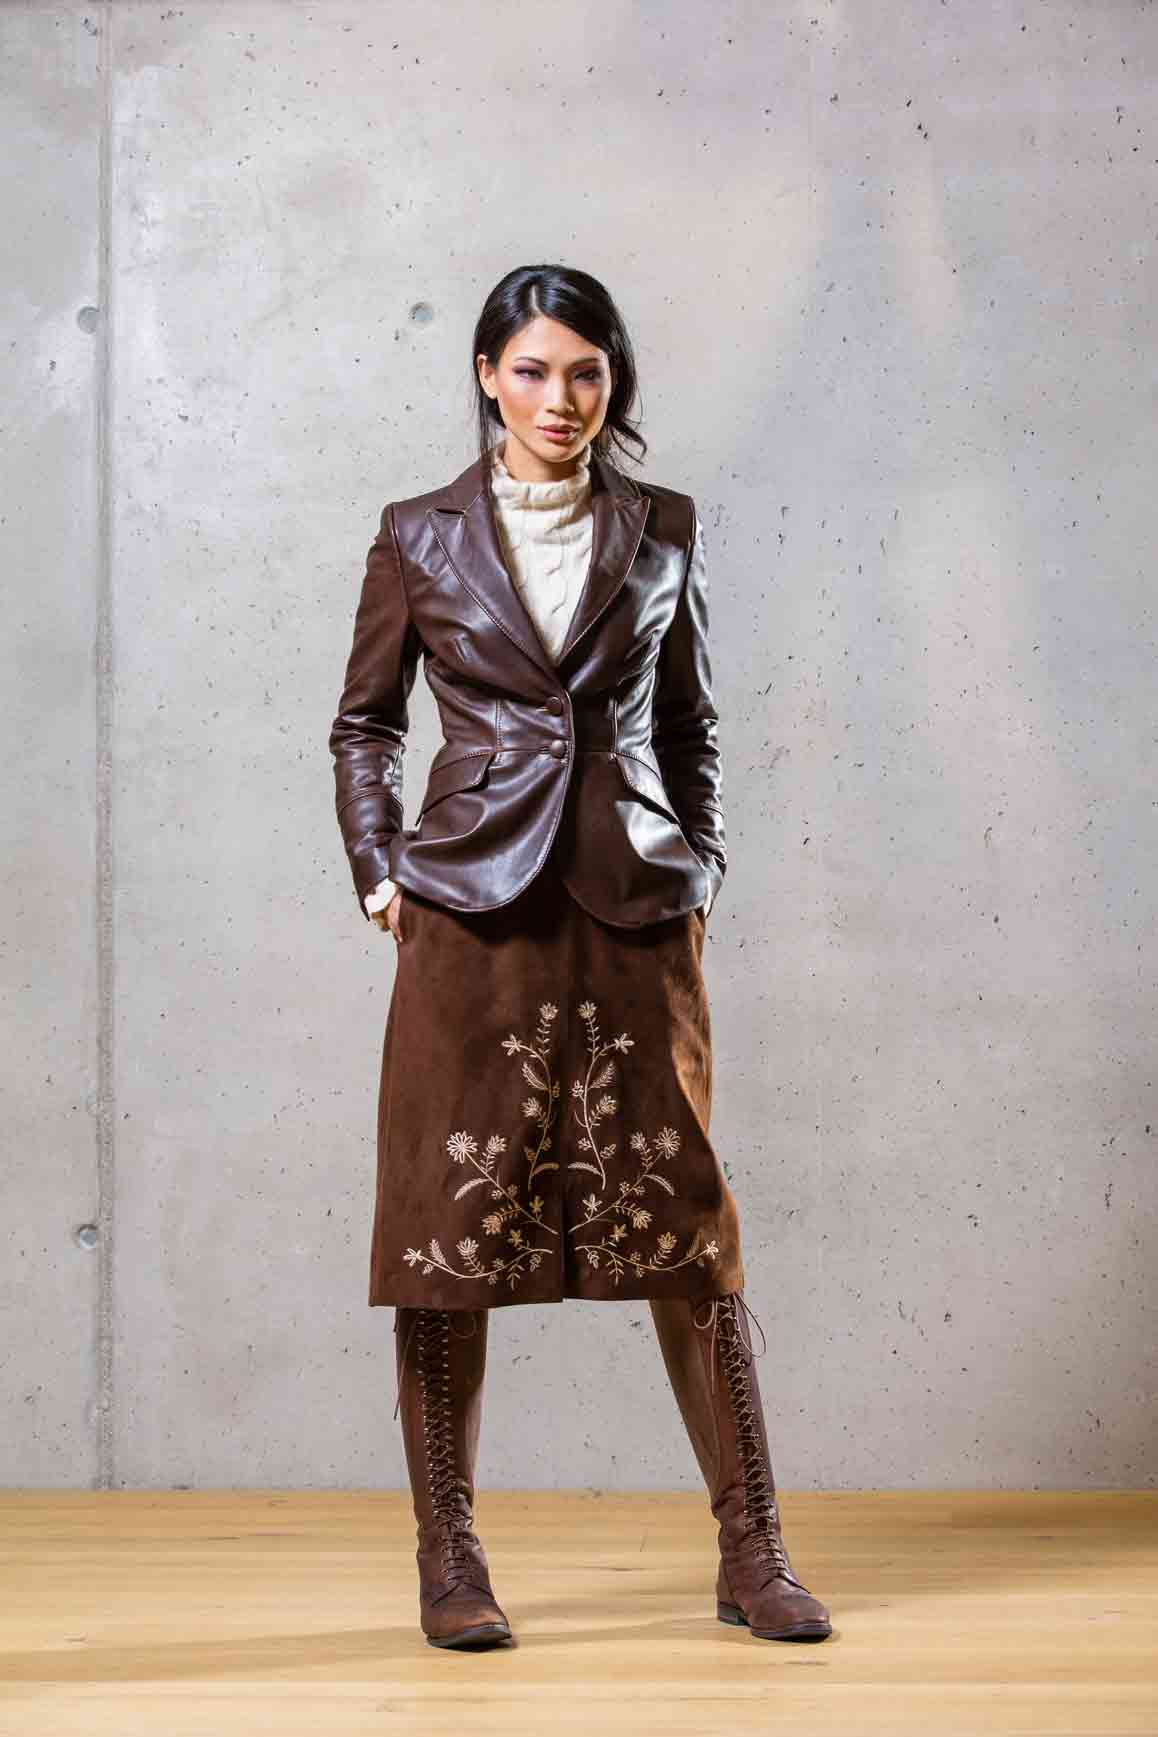 Goat Leather Skirt “Botanical”, kabok